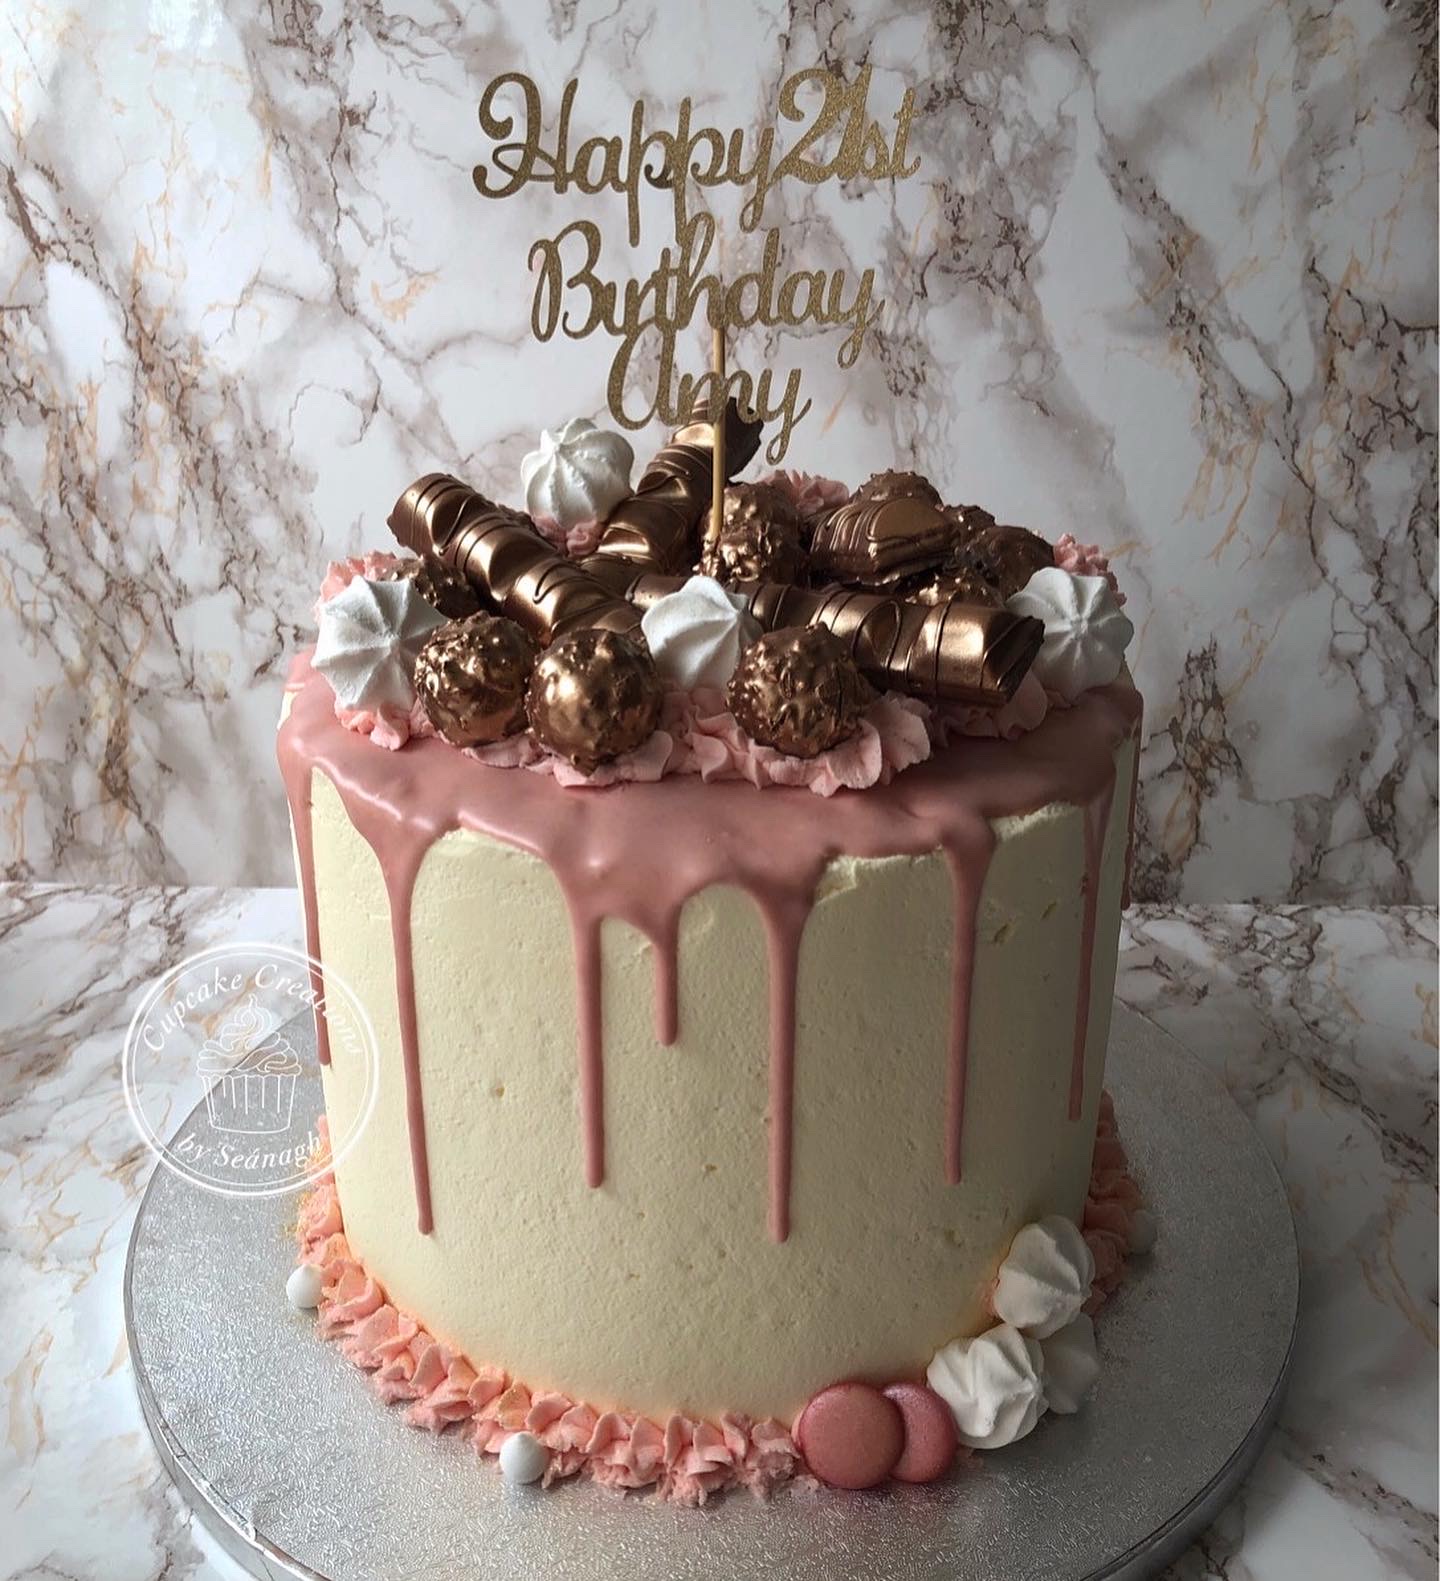 Beautiful Handmade 21st Birthday Cake - The Cake Mixer | The Cake Mixer